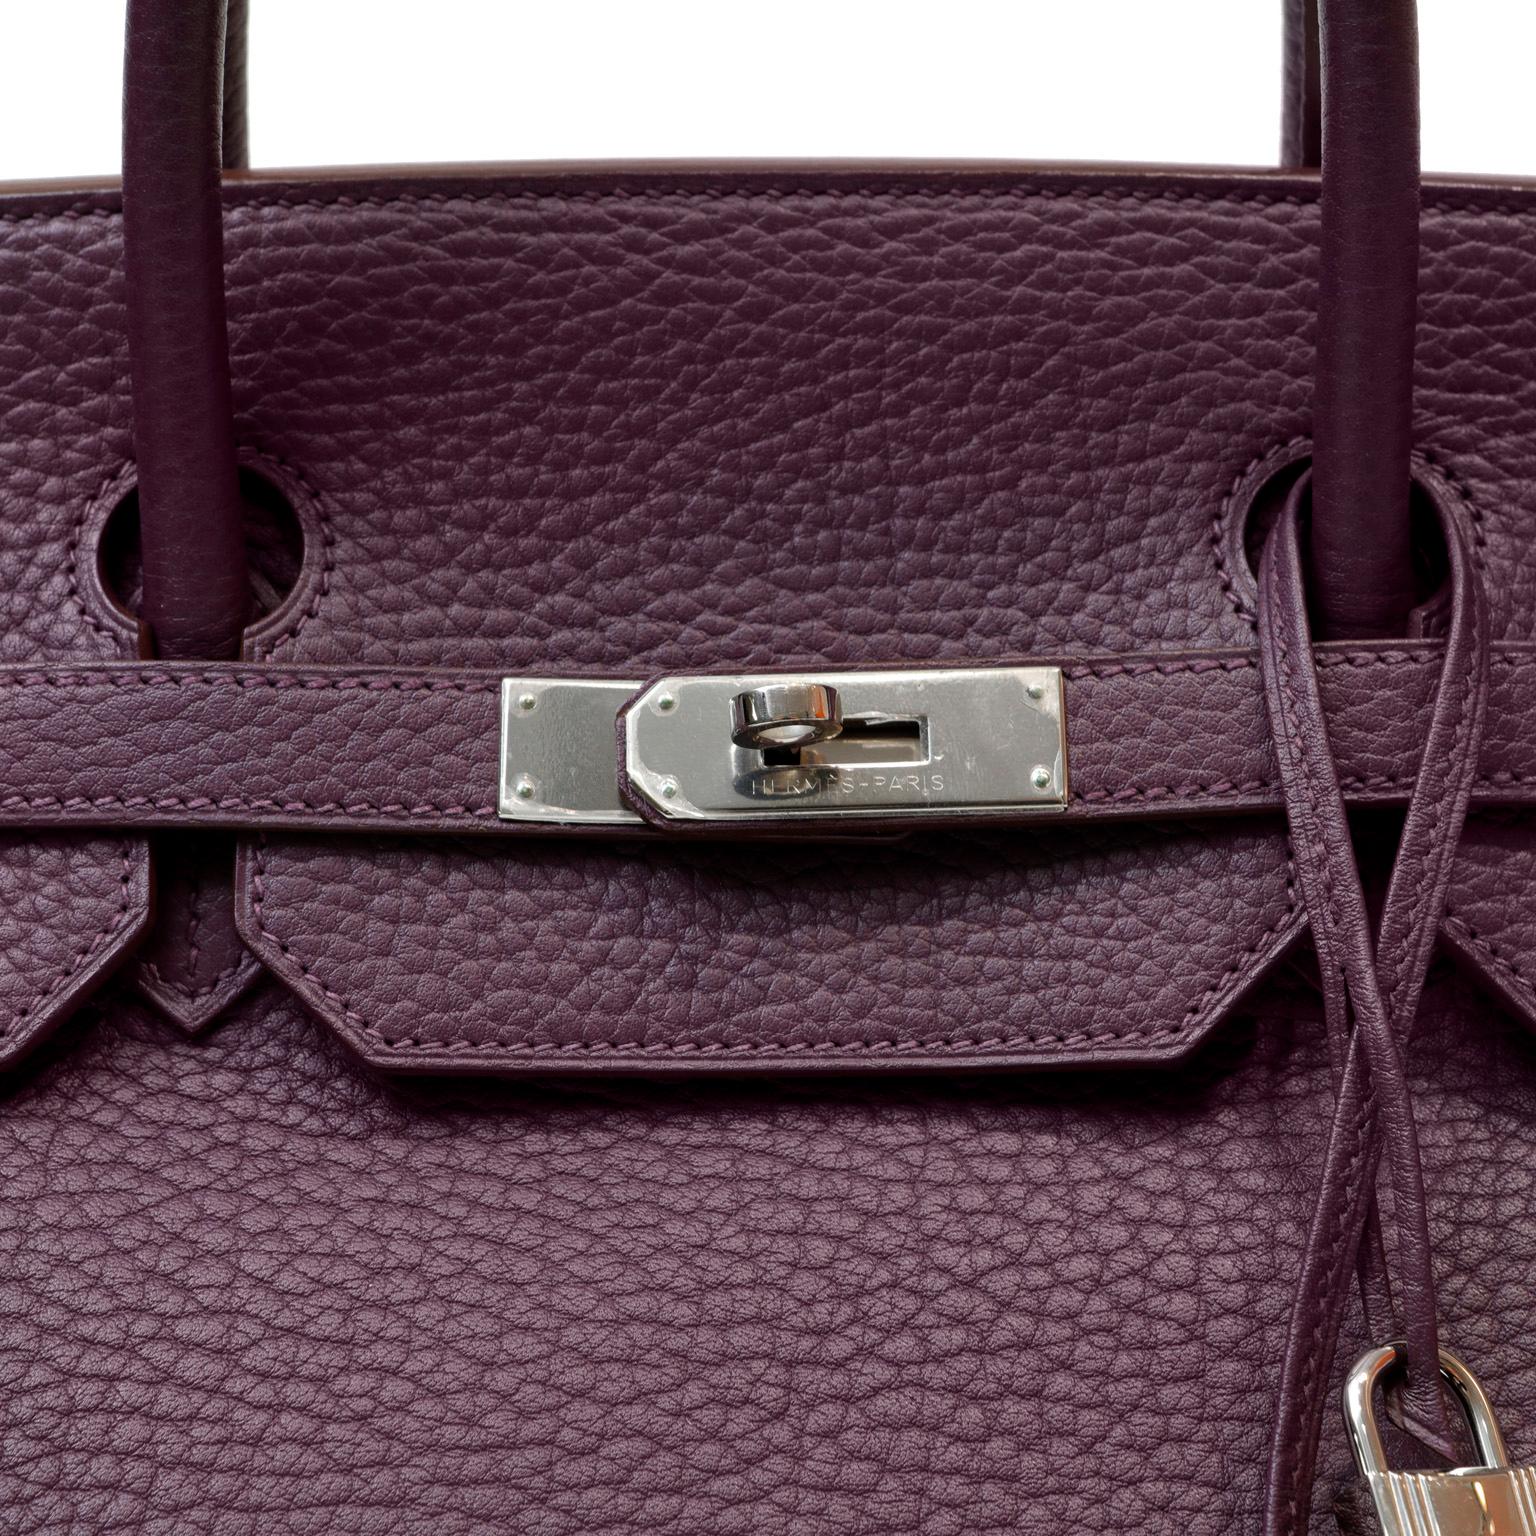 Cet authentique Birkin 40 cm en cuir Hermès Violet Condit est en parfait état, avec le plastique de protection intact sur la quincaillerie en Palladium. Les sacs Hermès sont considérés dans le monde entier comme l'objet de luxe par excellence. 